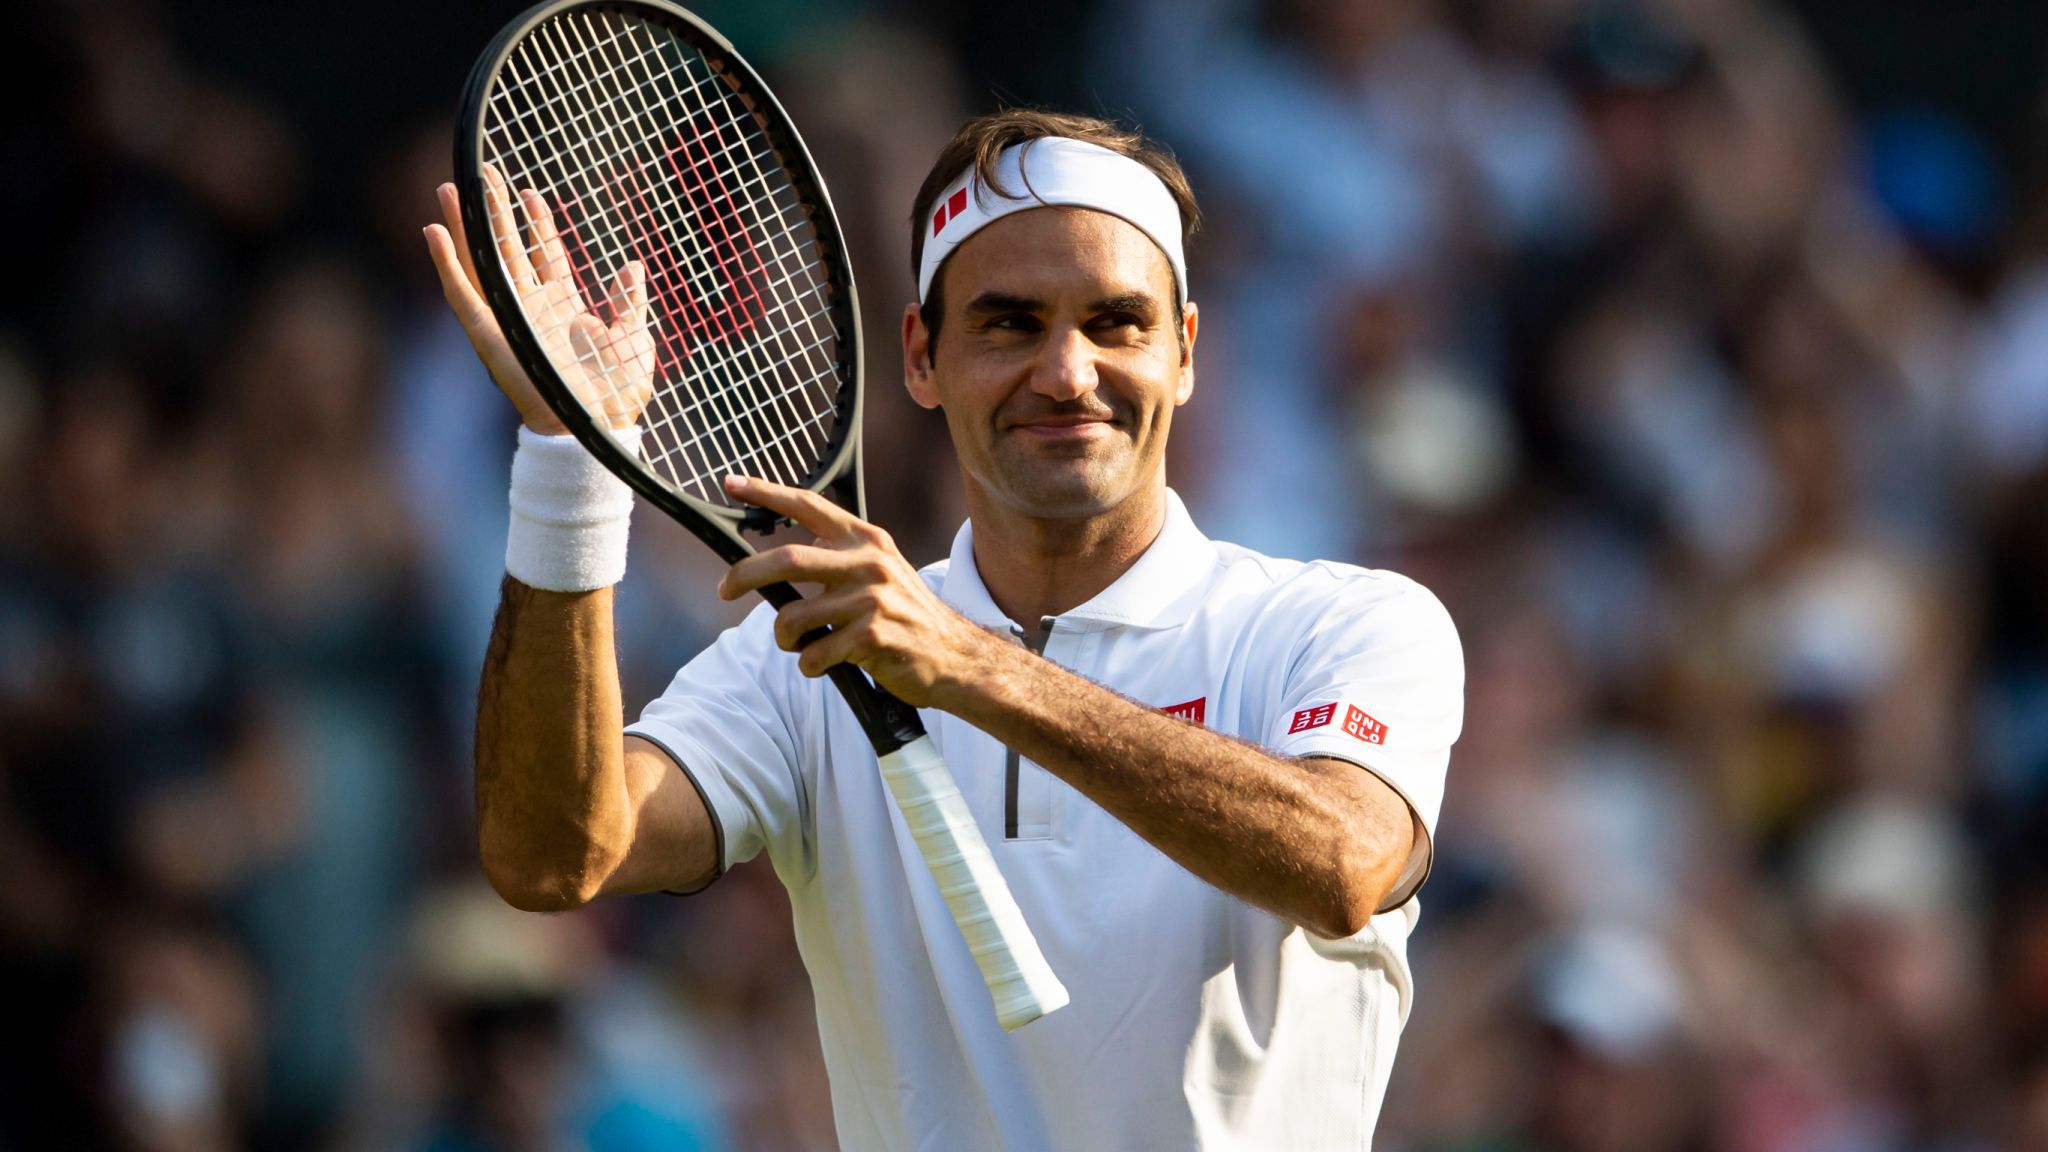 ¡Roger Federer! la tercera celebridad mejor pagada del mundo según Forbes